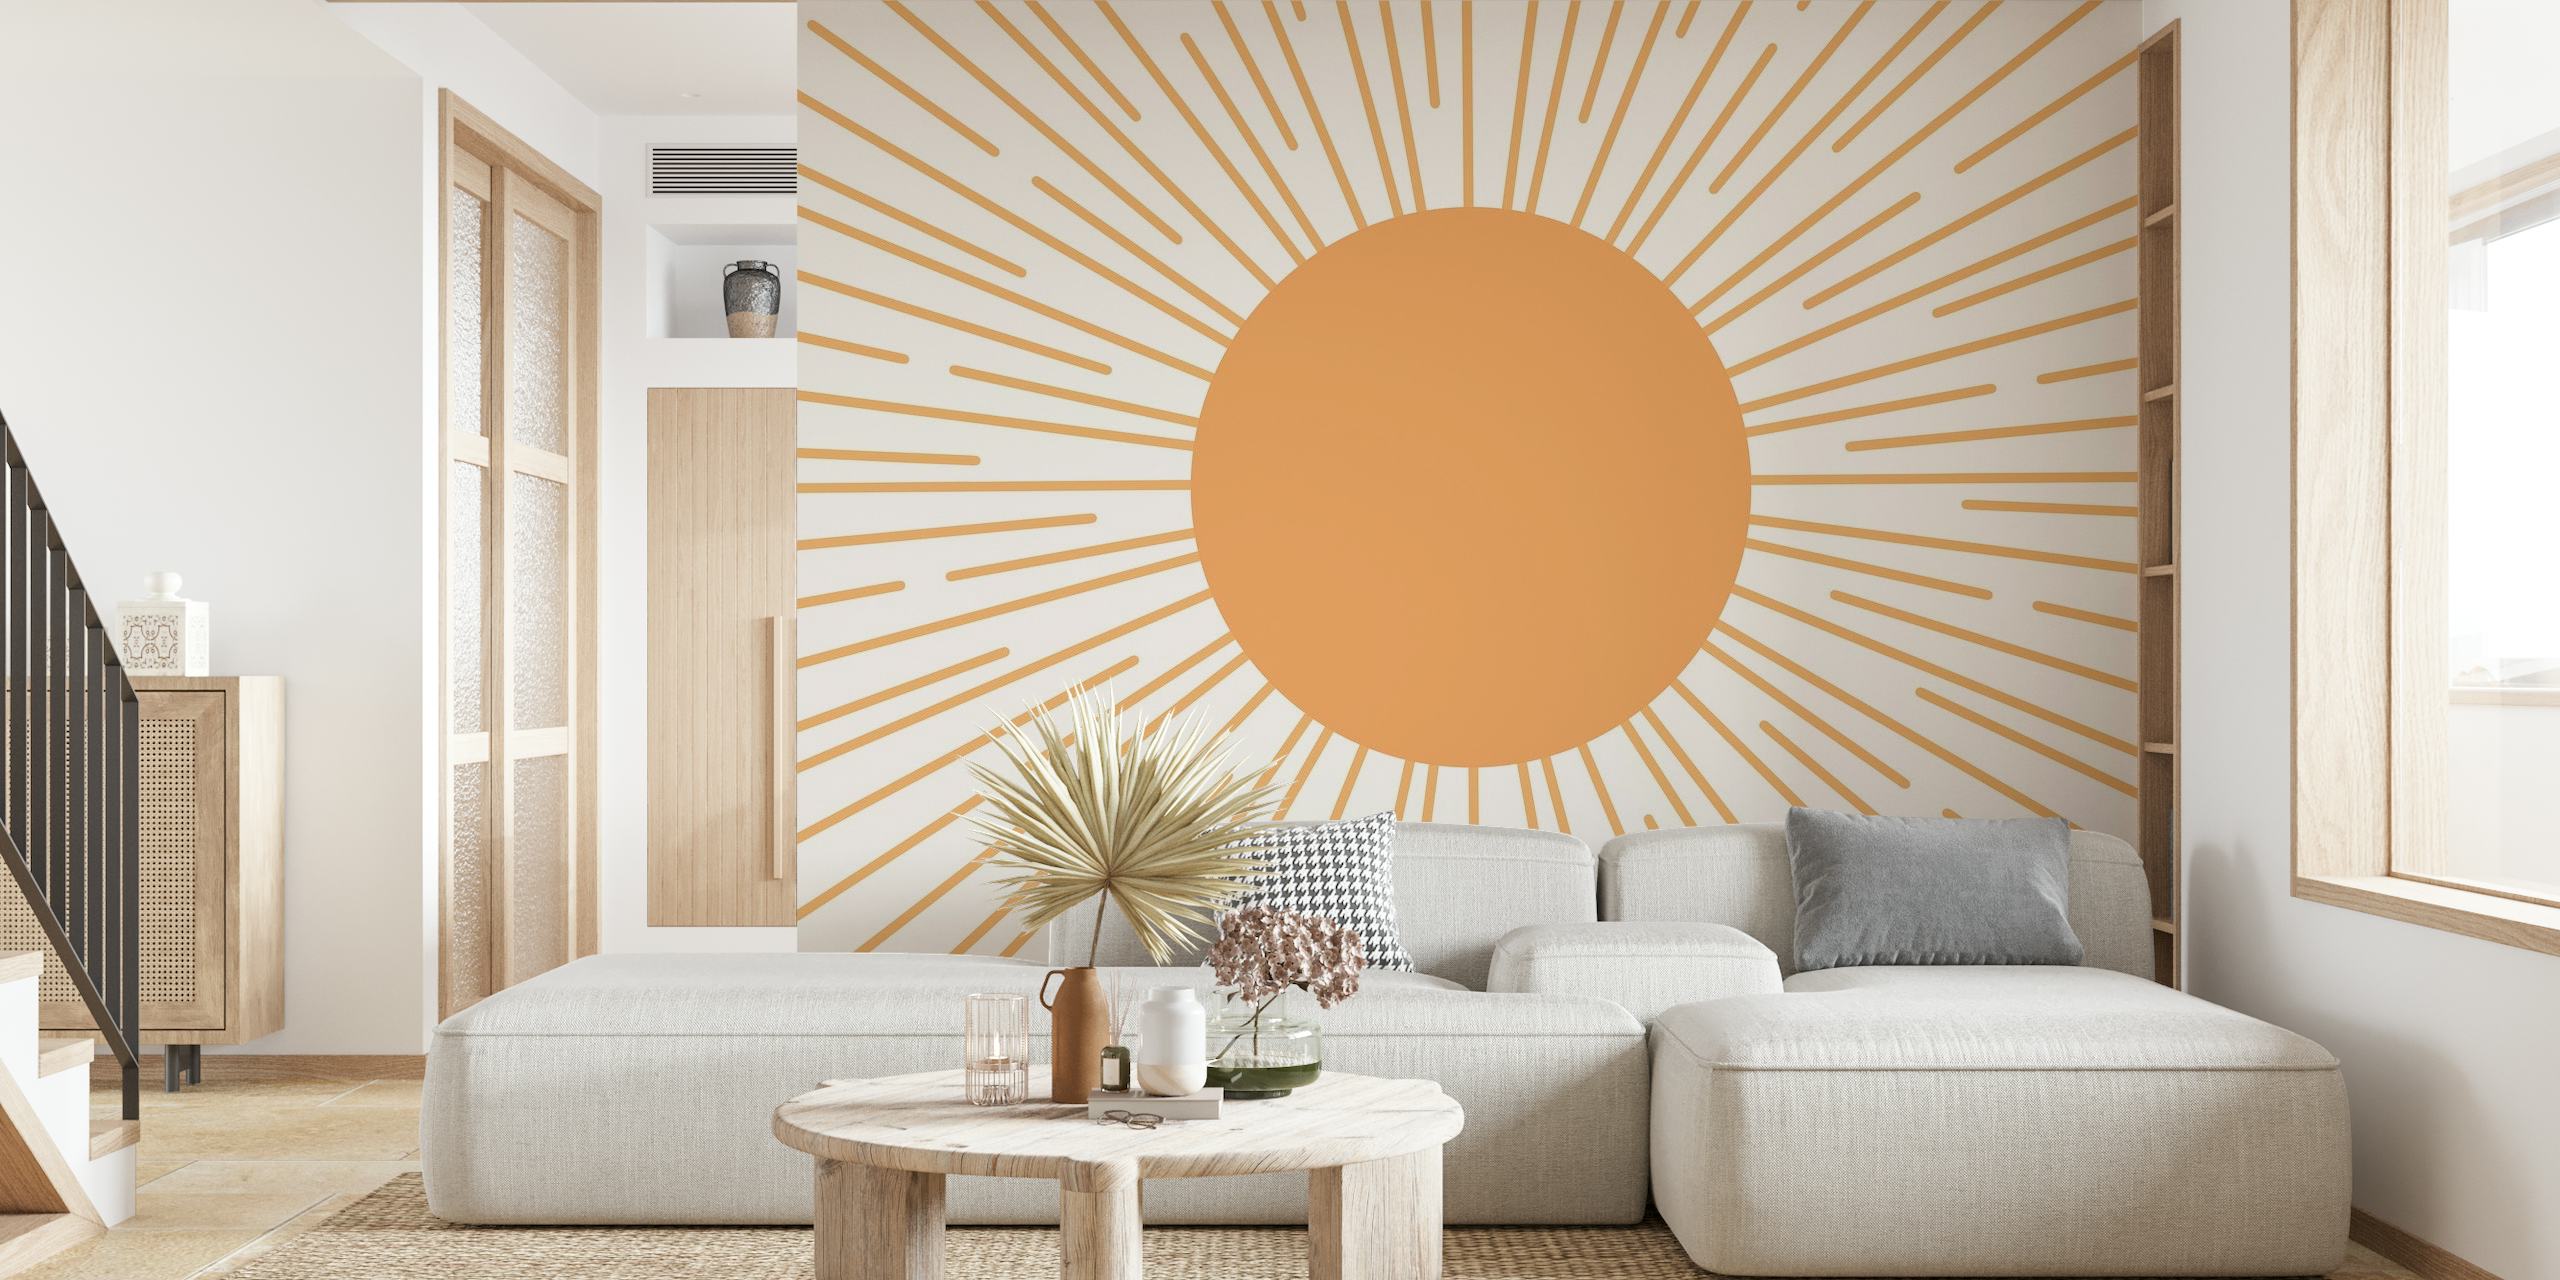 Papier peint mural à motif Sunburst avec un centre beige chaud et des lignes crème rayonnantes sur fond clair